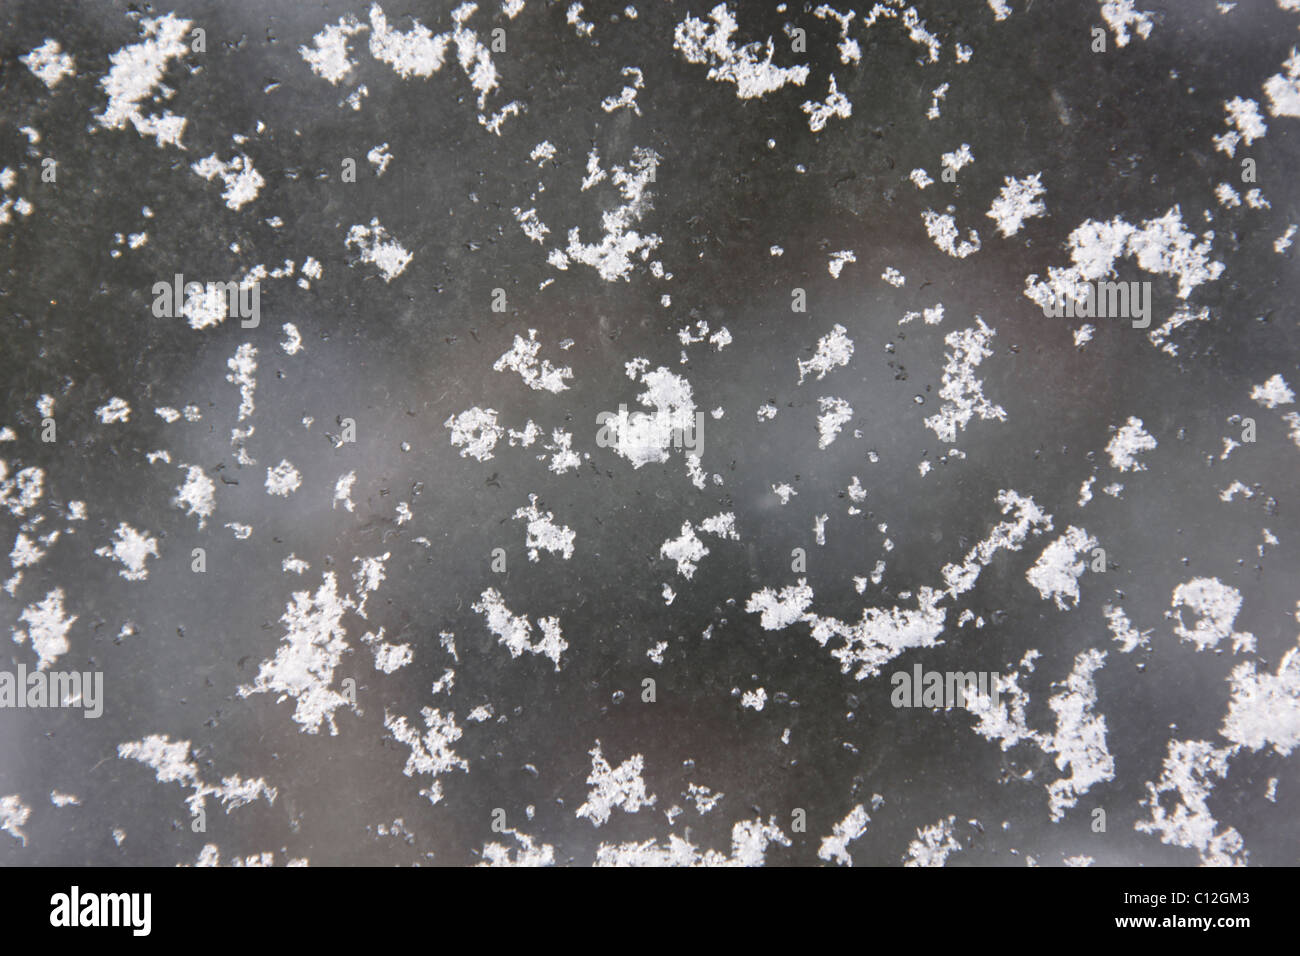 Snow Flakes on a Window Stock Photo